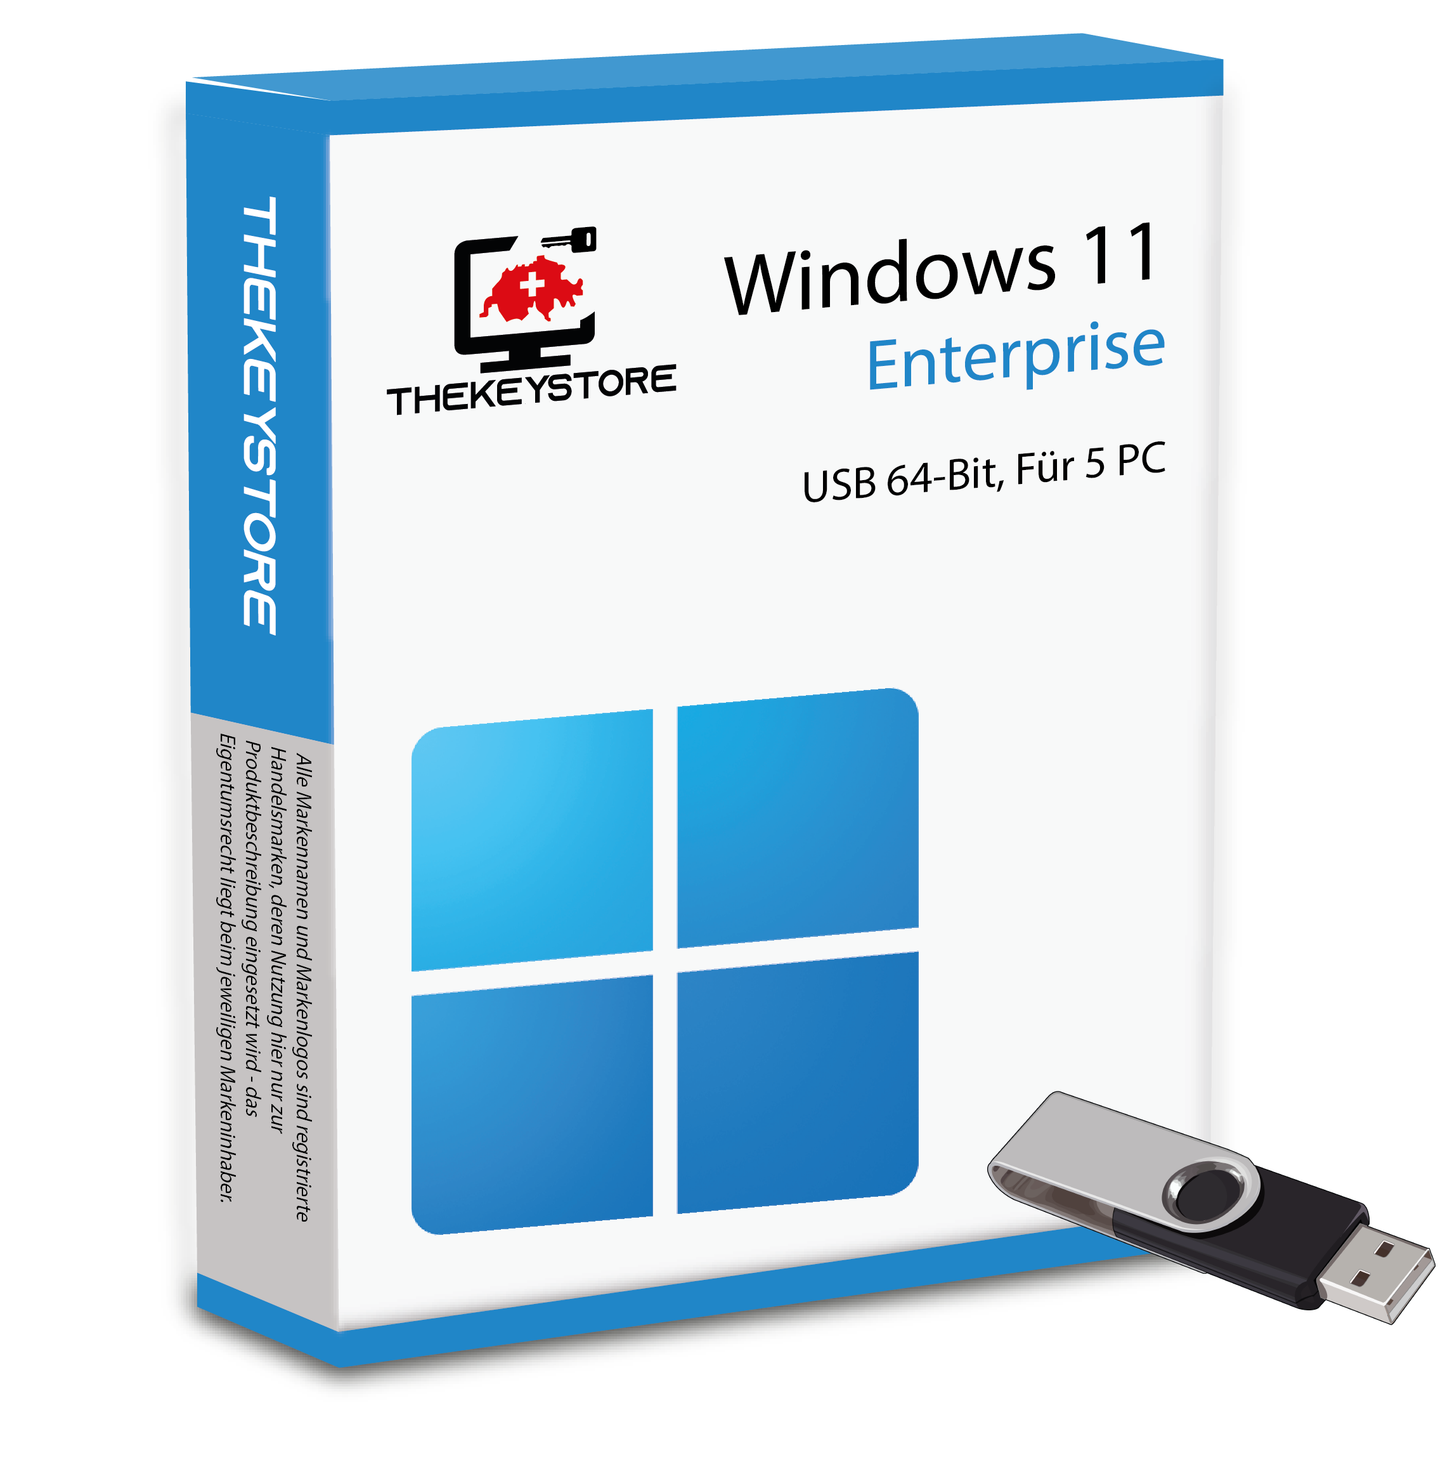 Microsoft Windows 11 Enterprise - Für 5 PC - TheKeyStore Schweiz